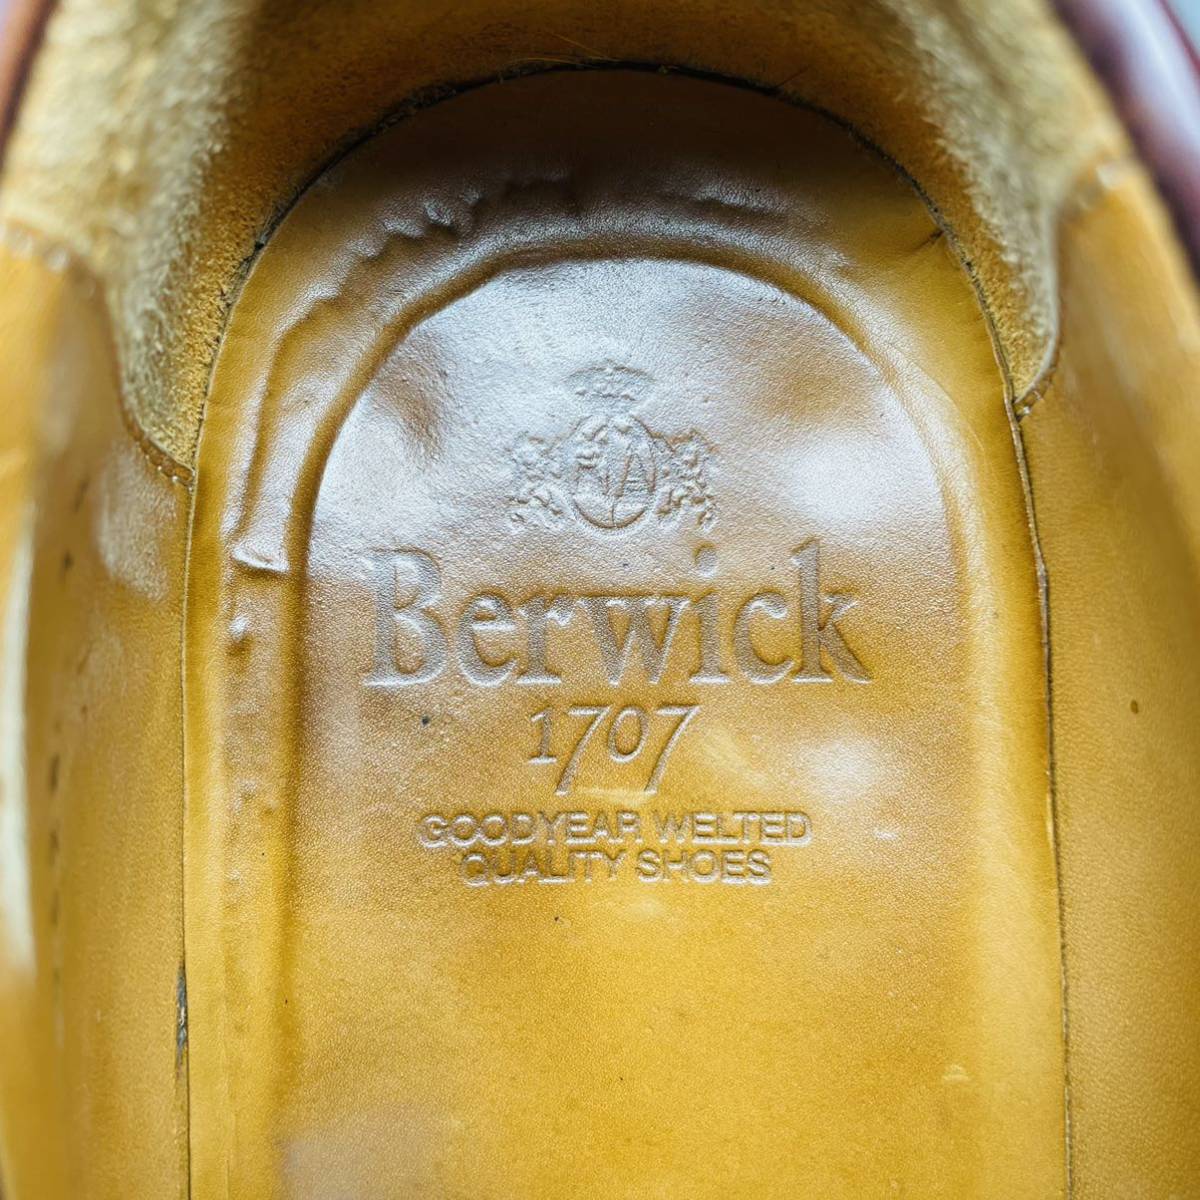 Berwick 1707 バーウィック コインローファー 26cm UK7.5 メンズ レザー 本革 ダークブラウン 濃茶 ビジネスシューズ 革靴